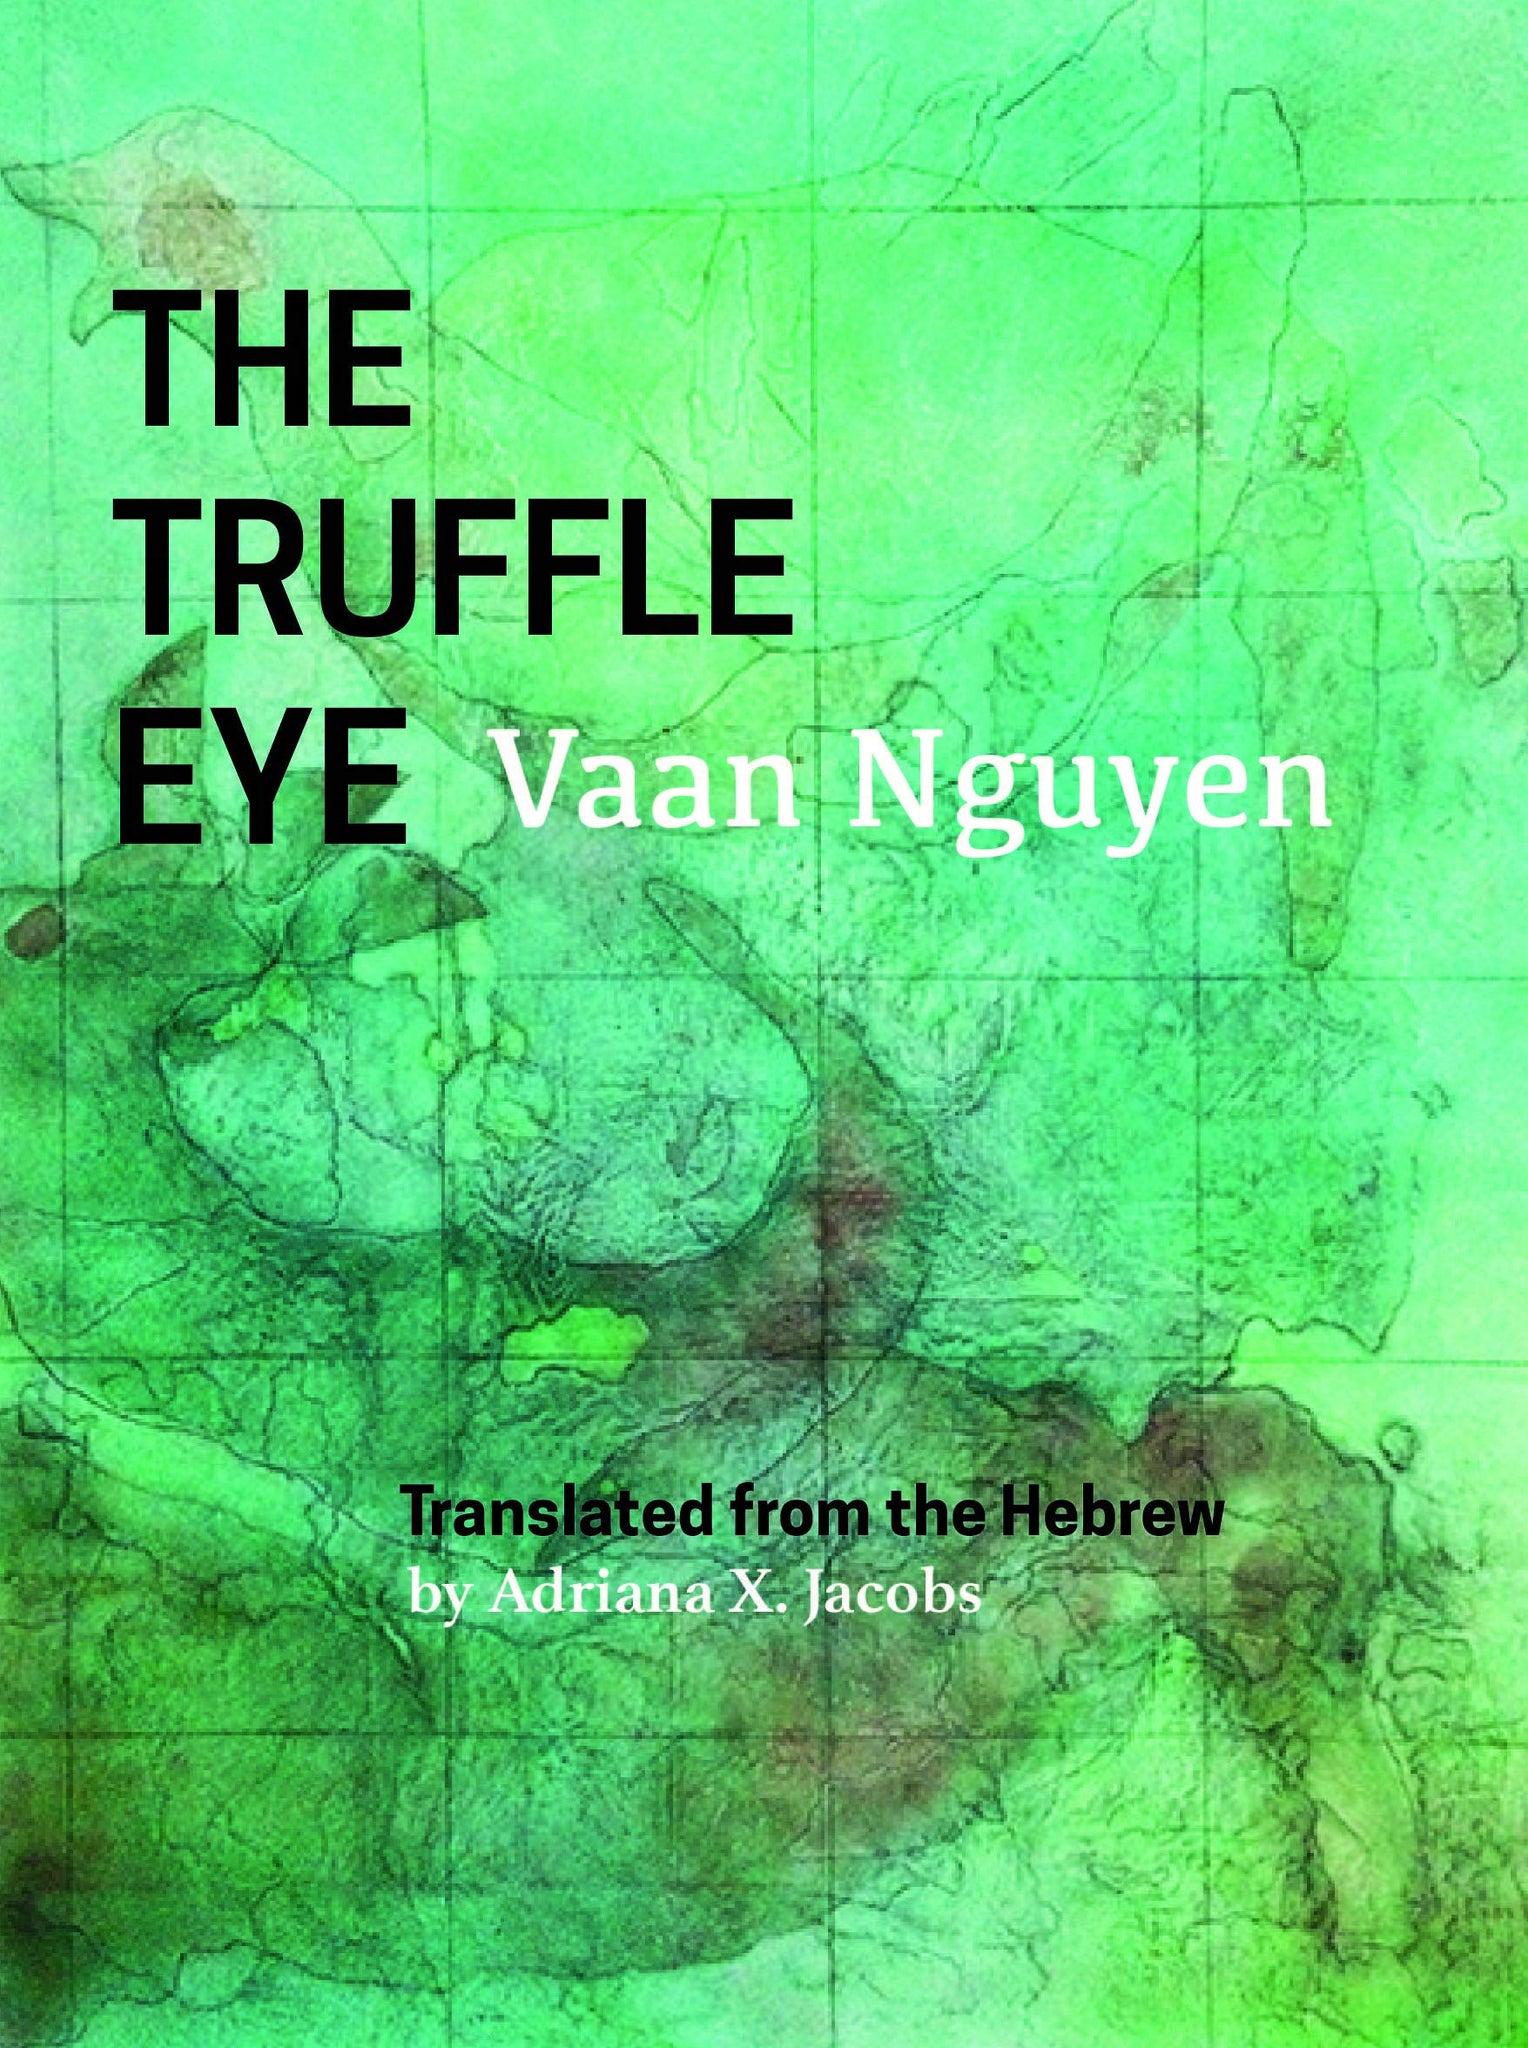 The Truffle Eye